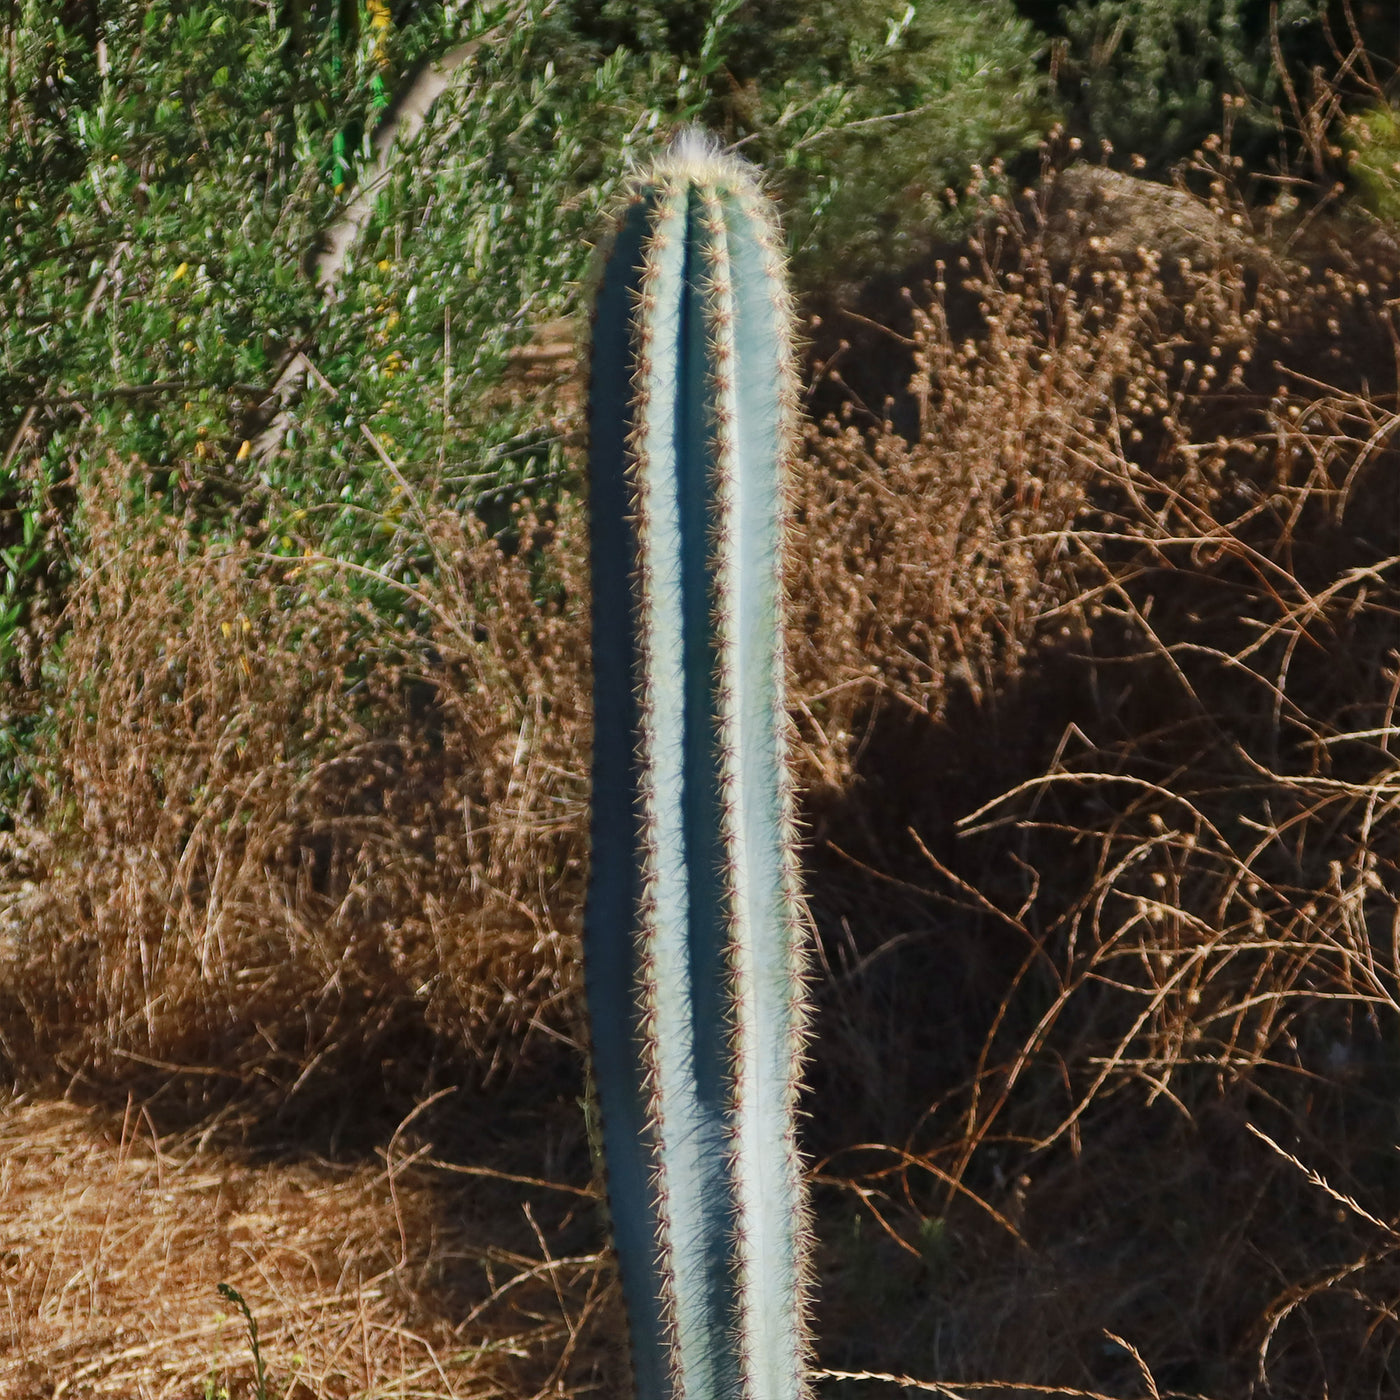 Brazilian Blue Cactus - Blue Columnar Cactus 'Pilosocereus azureus'